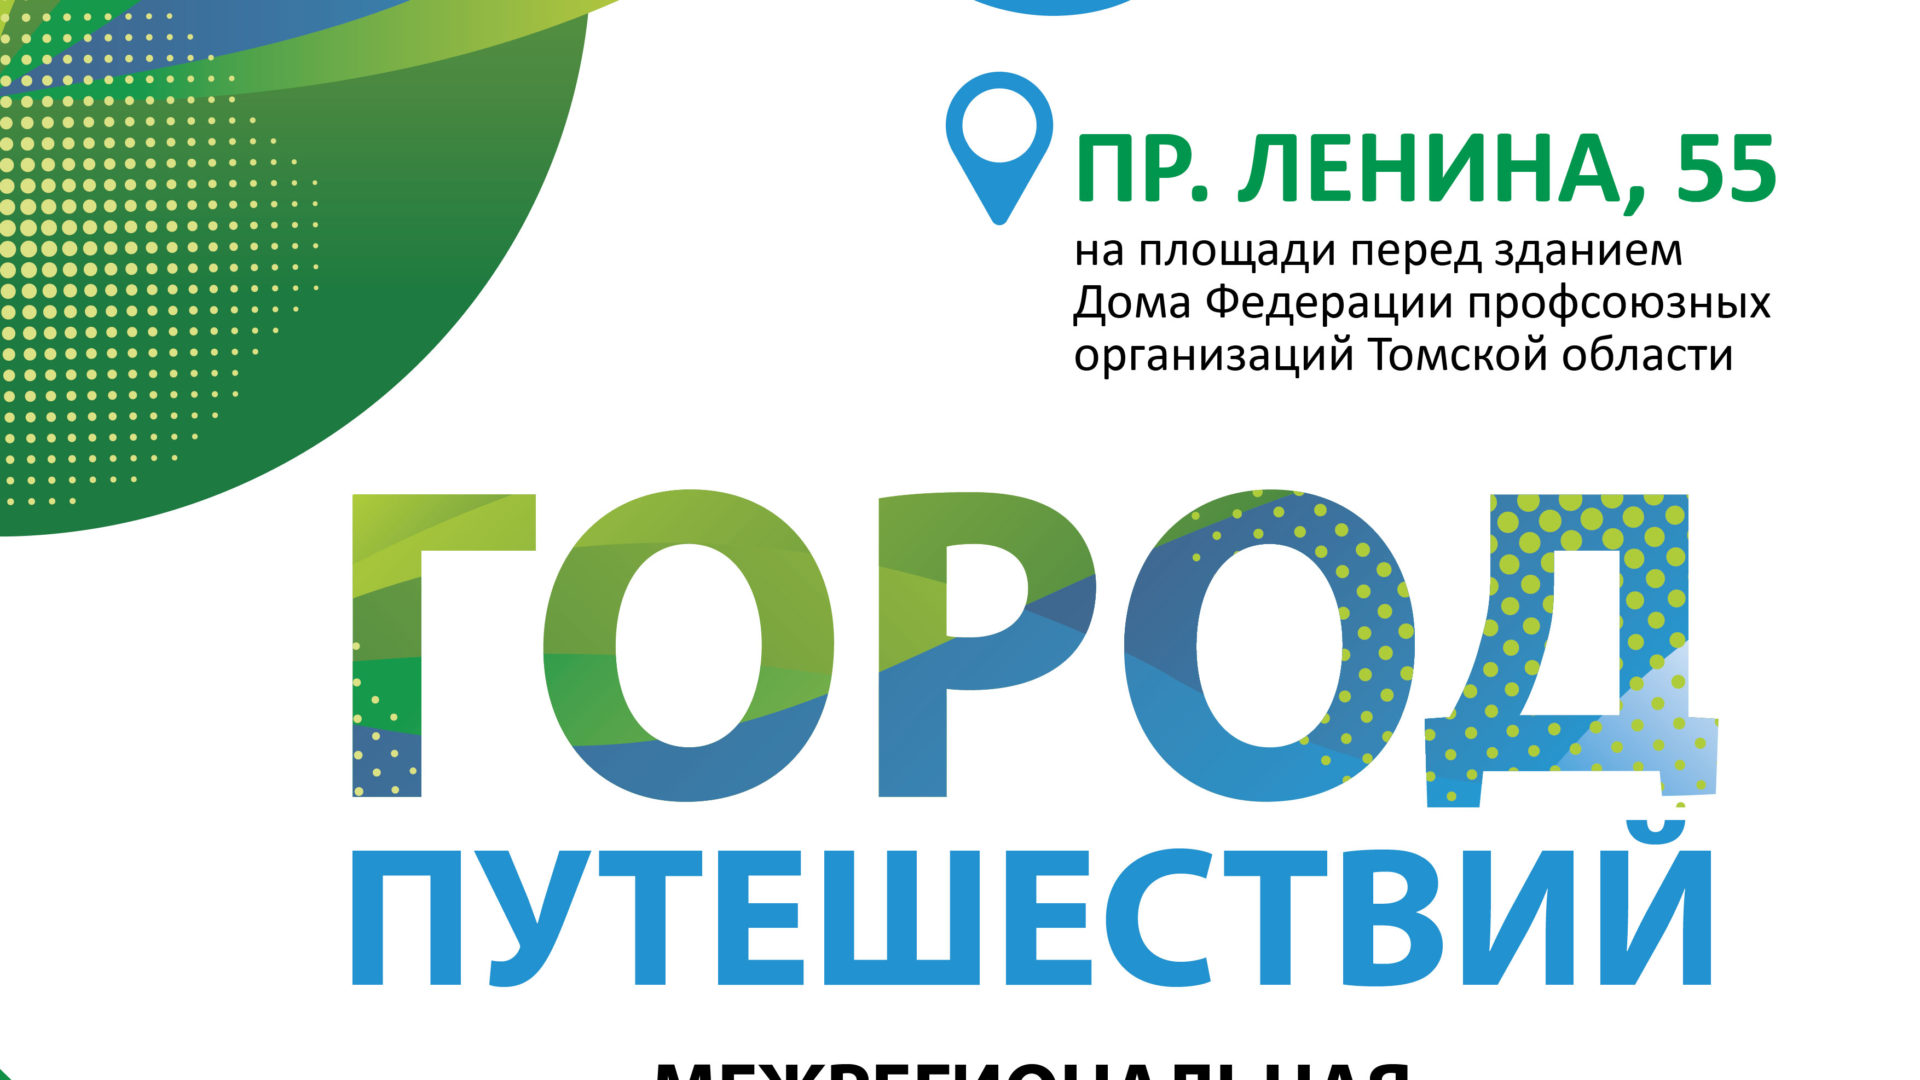 В Томске пройдёт III специализированная выставка туристских организаций